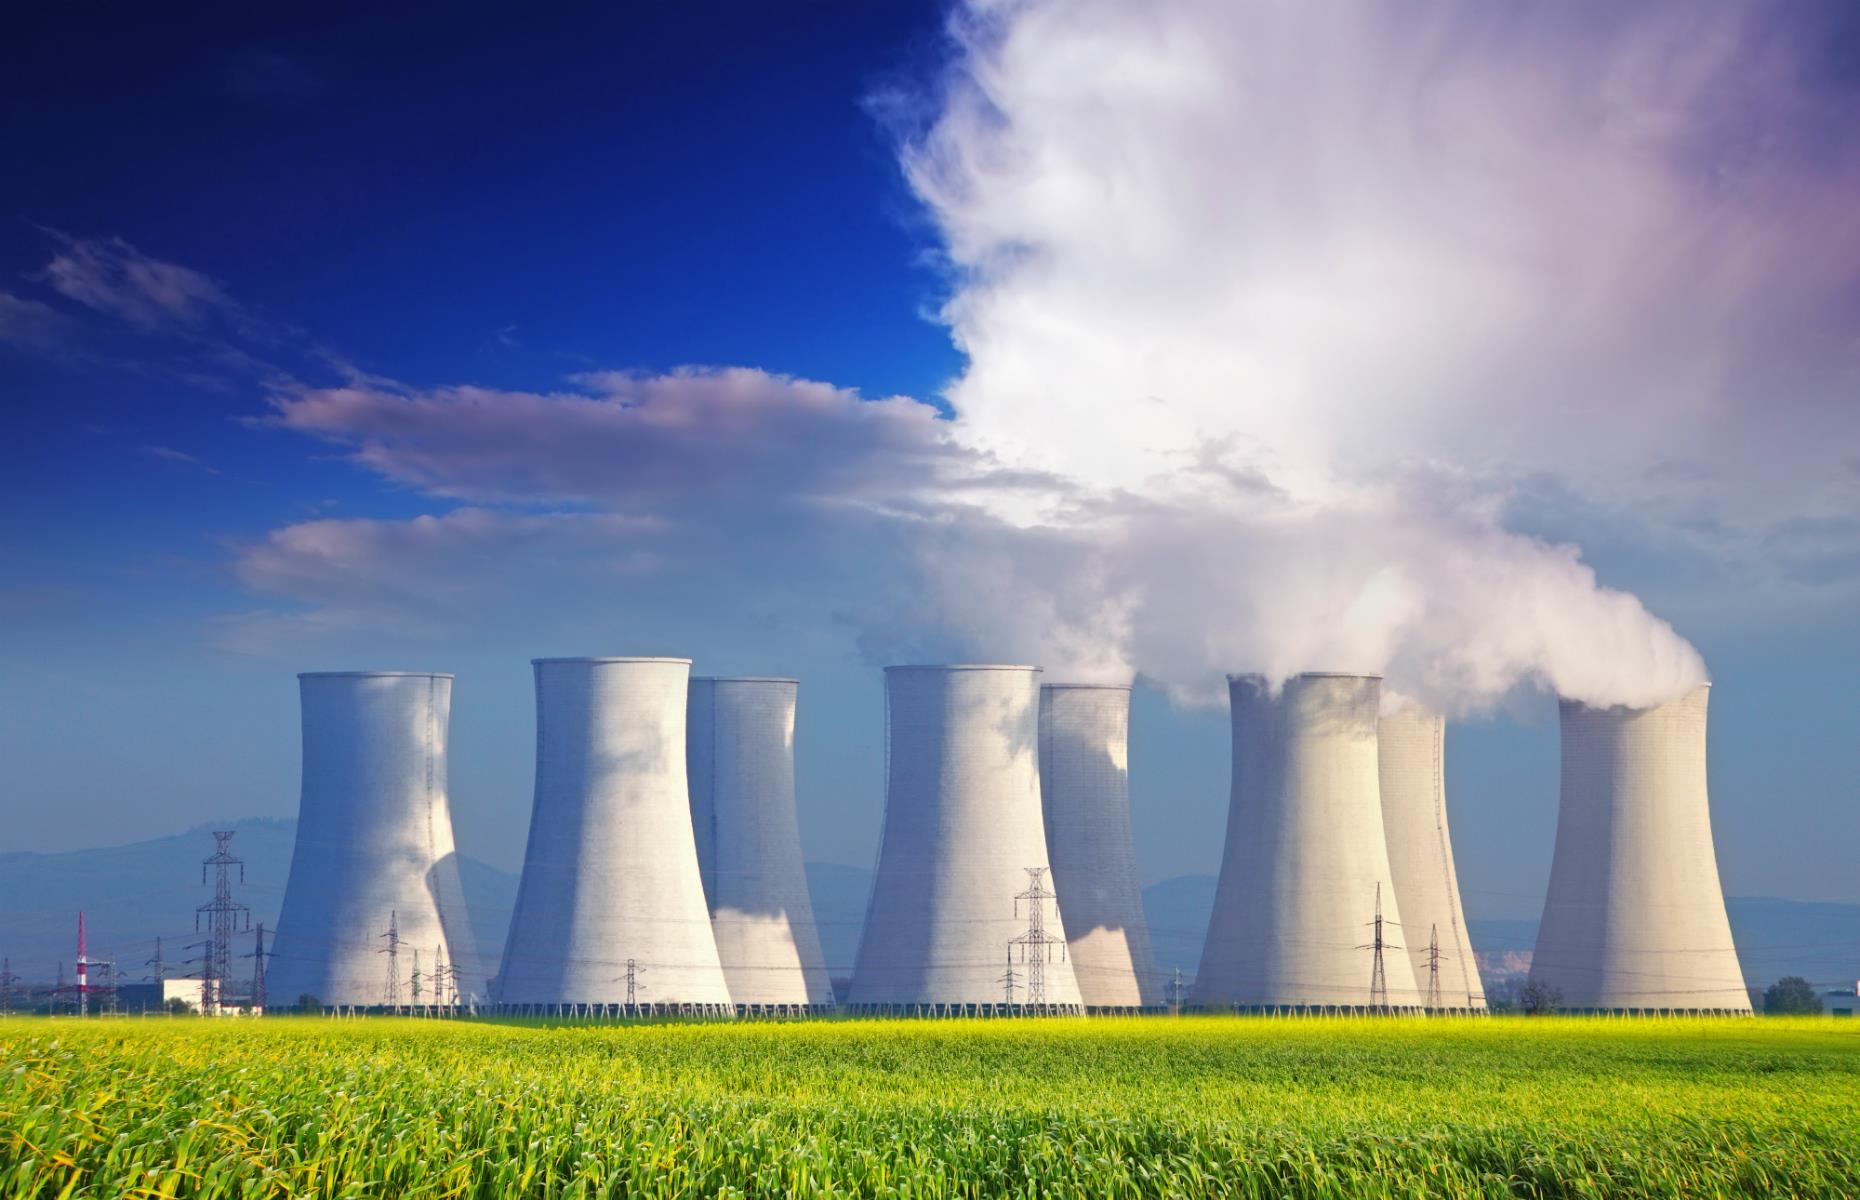 The alternative? Nuclear power